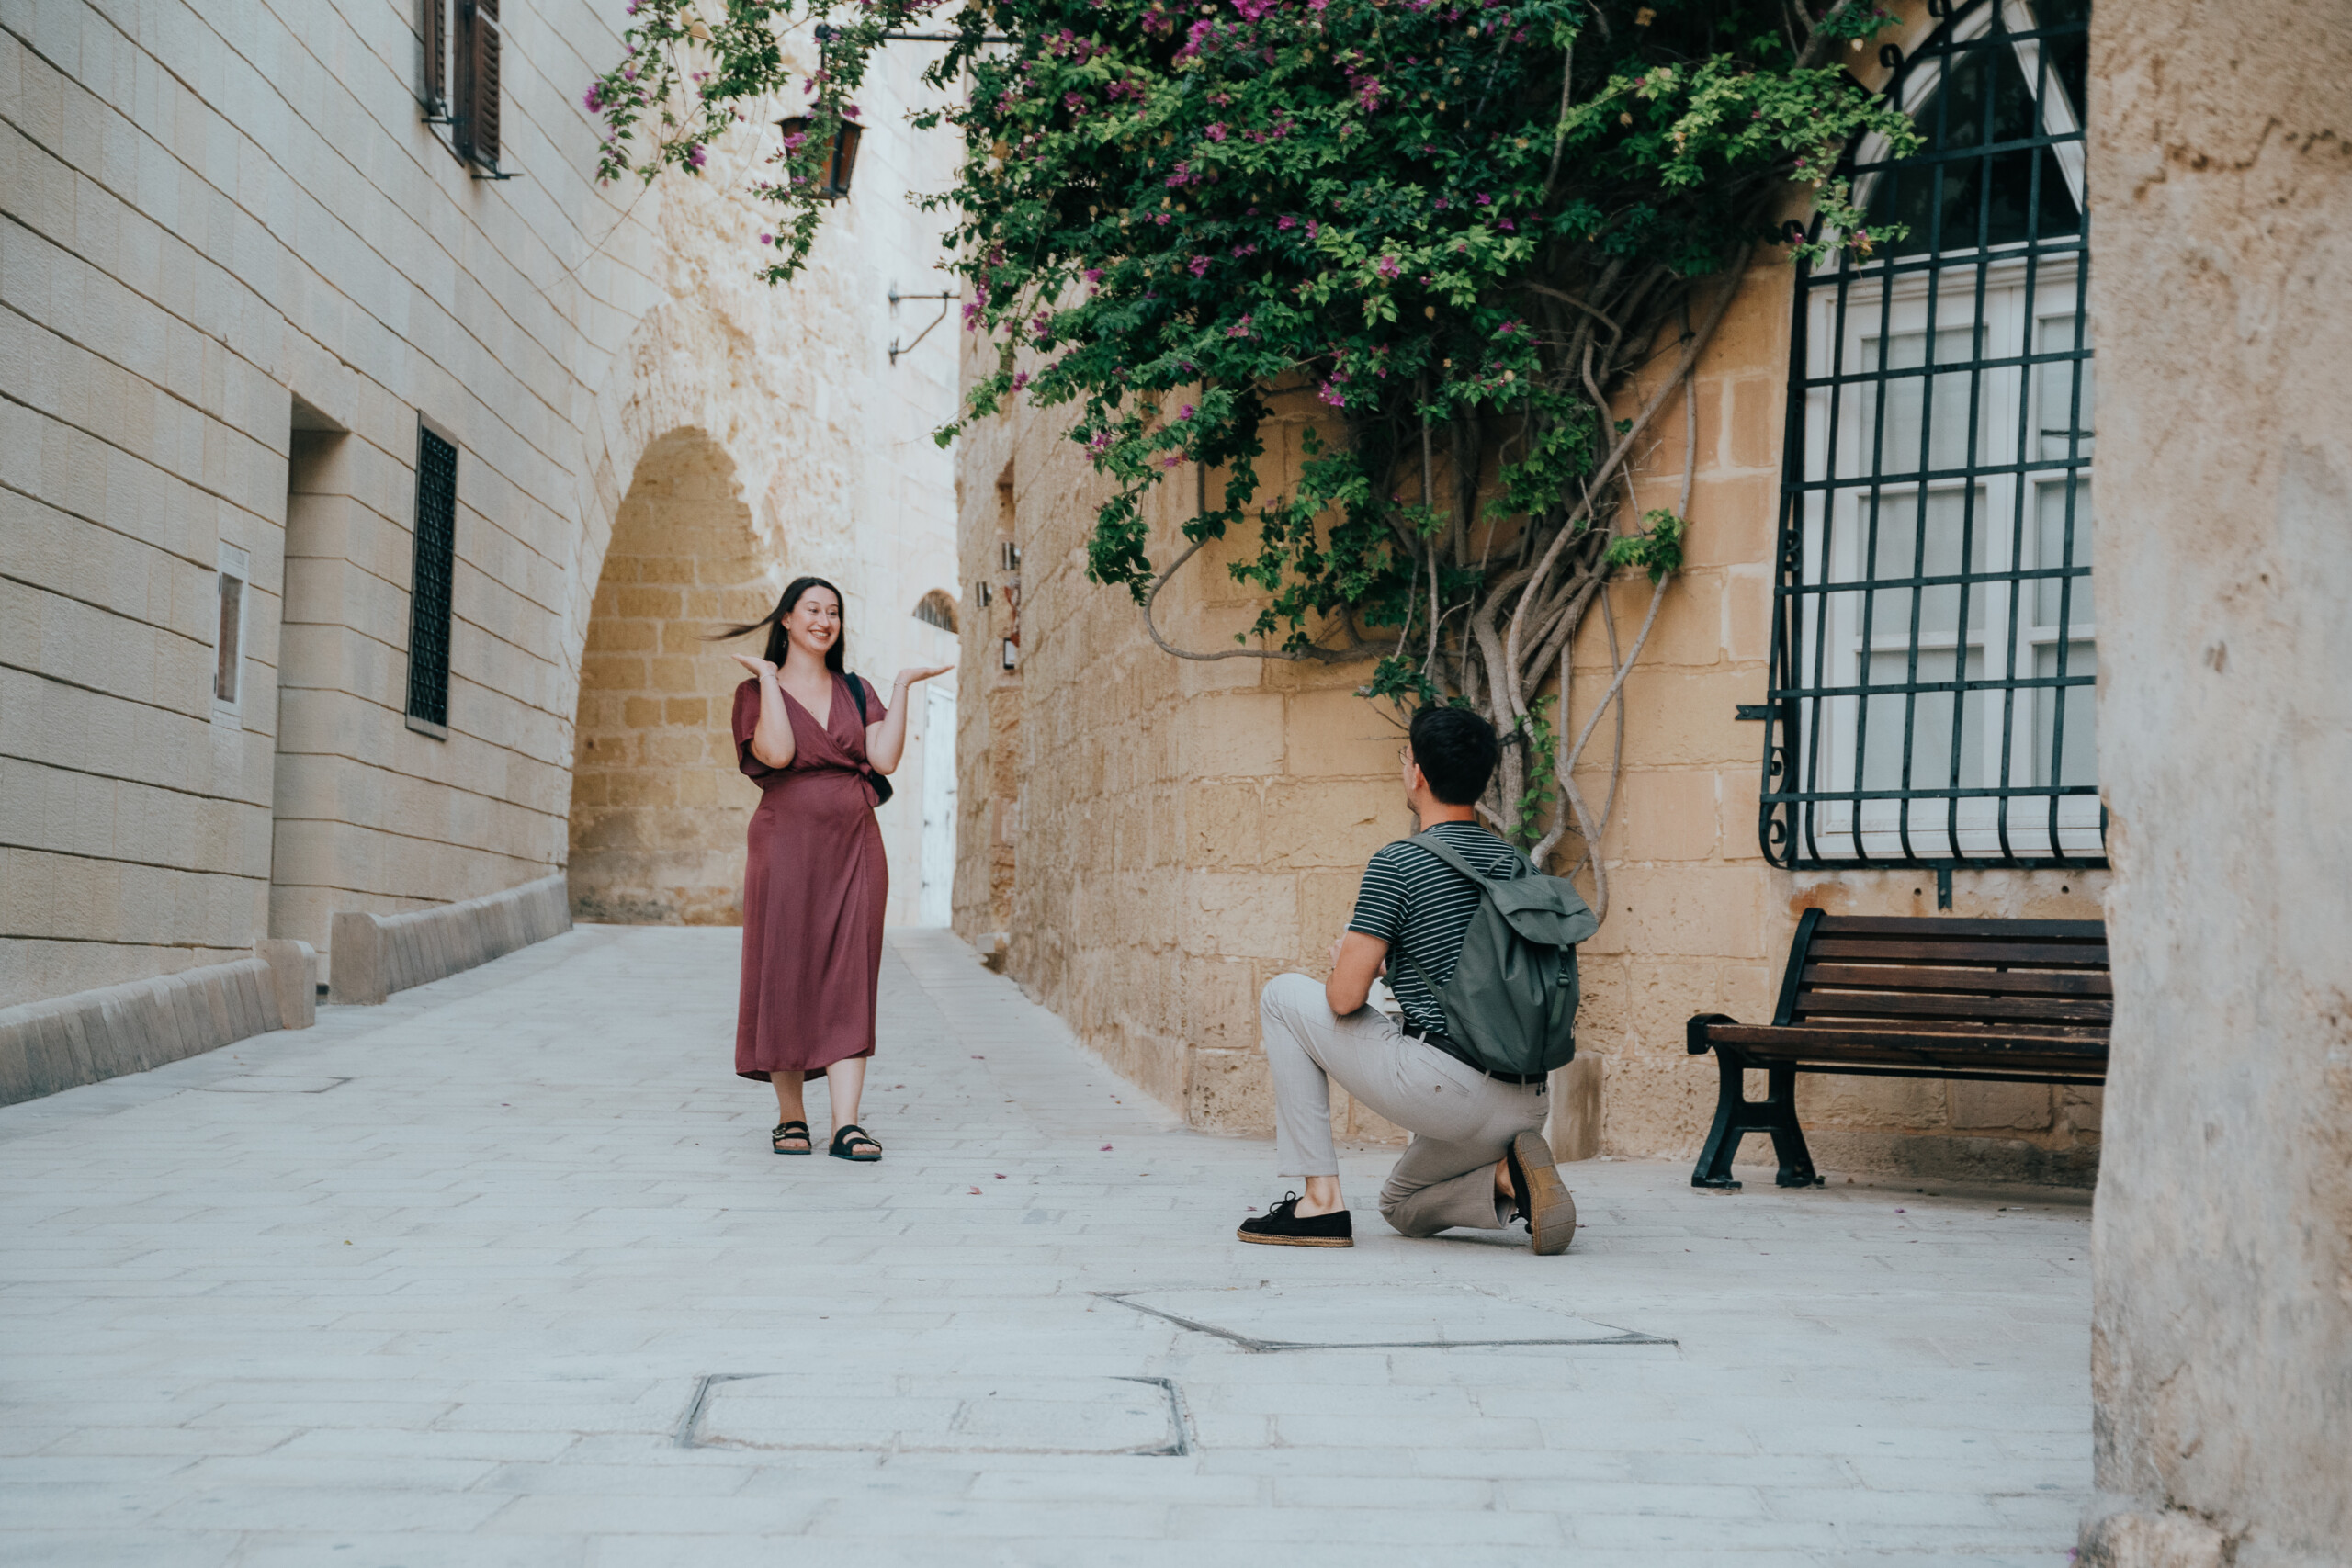 Proposal photoshoot by tumer, Localgrapher in Valletta